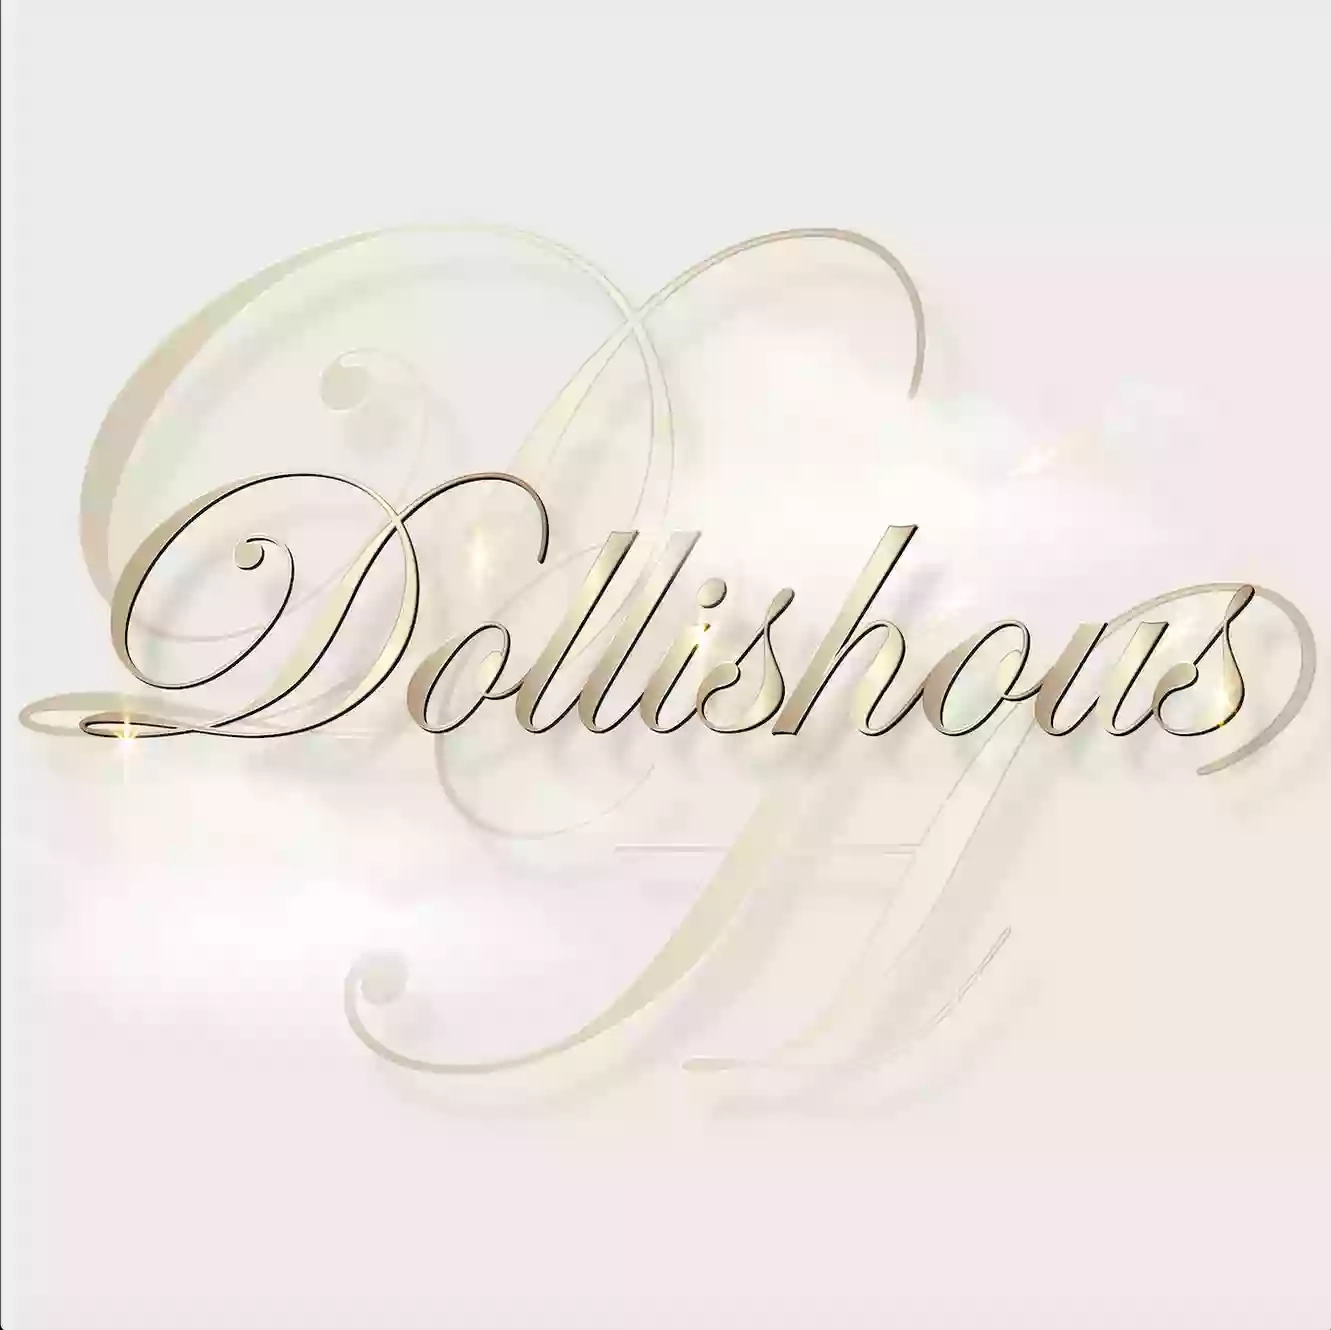 Dollishous